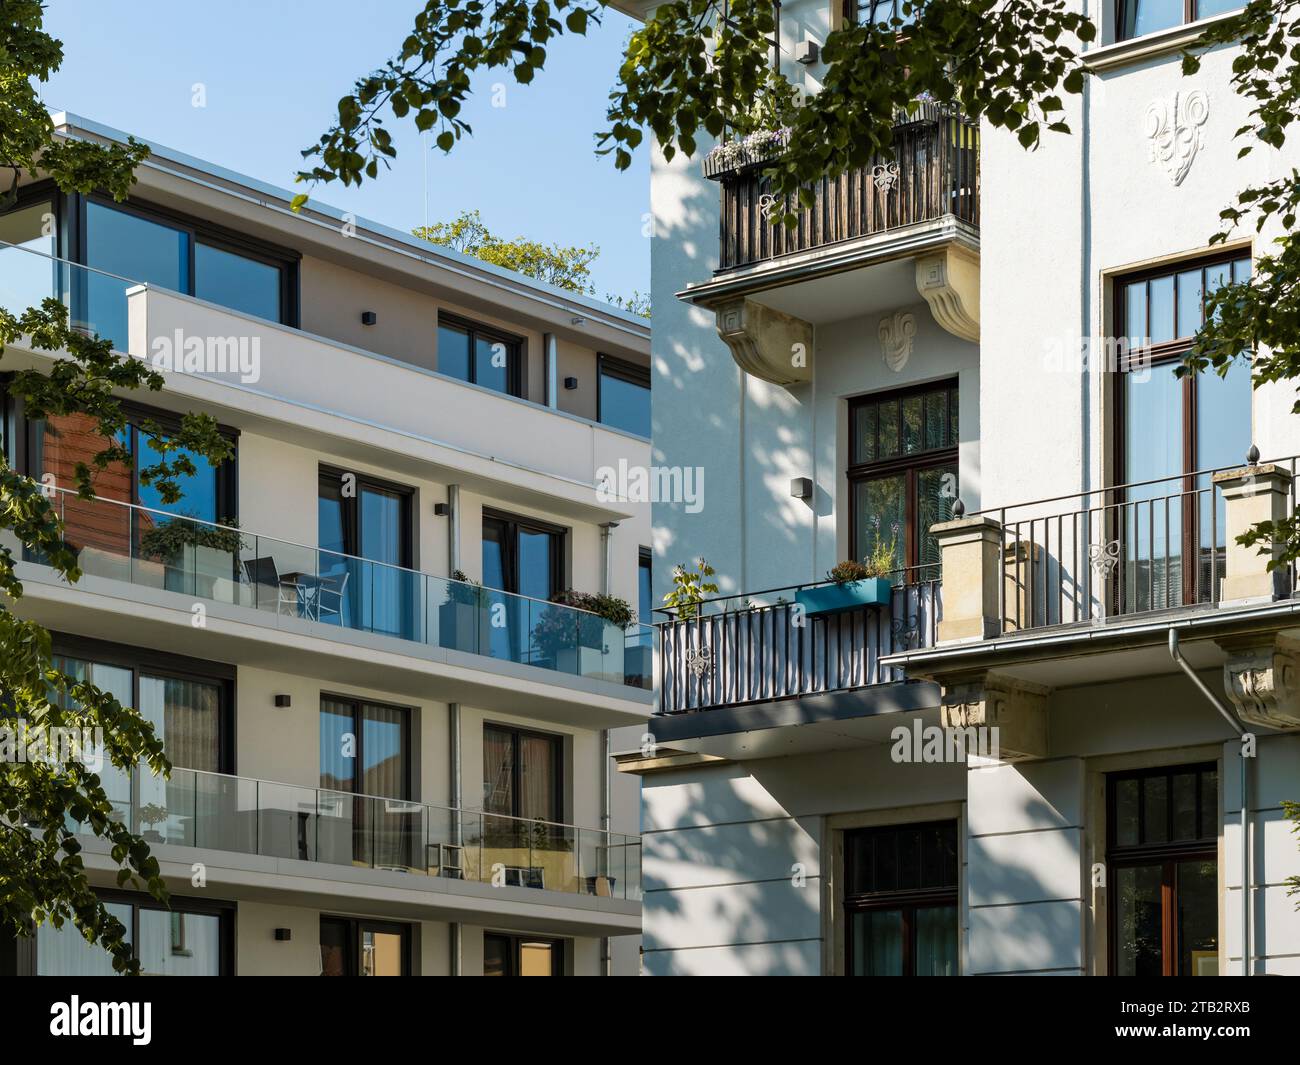 Alte versus neue Wohnarchitektur in Deutschland. Verschiedene Hausfassaden von Gebäuden mit mehreren Wohnungen. Balkone und Fenster gehören dazu Stockfoto